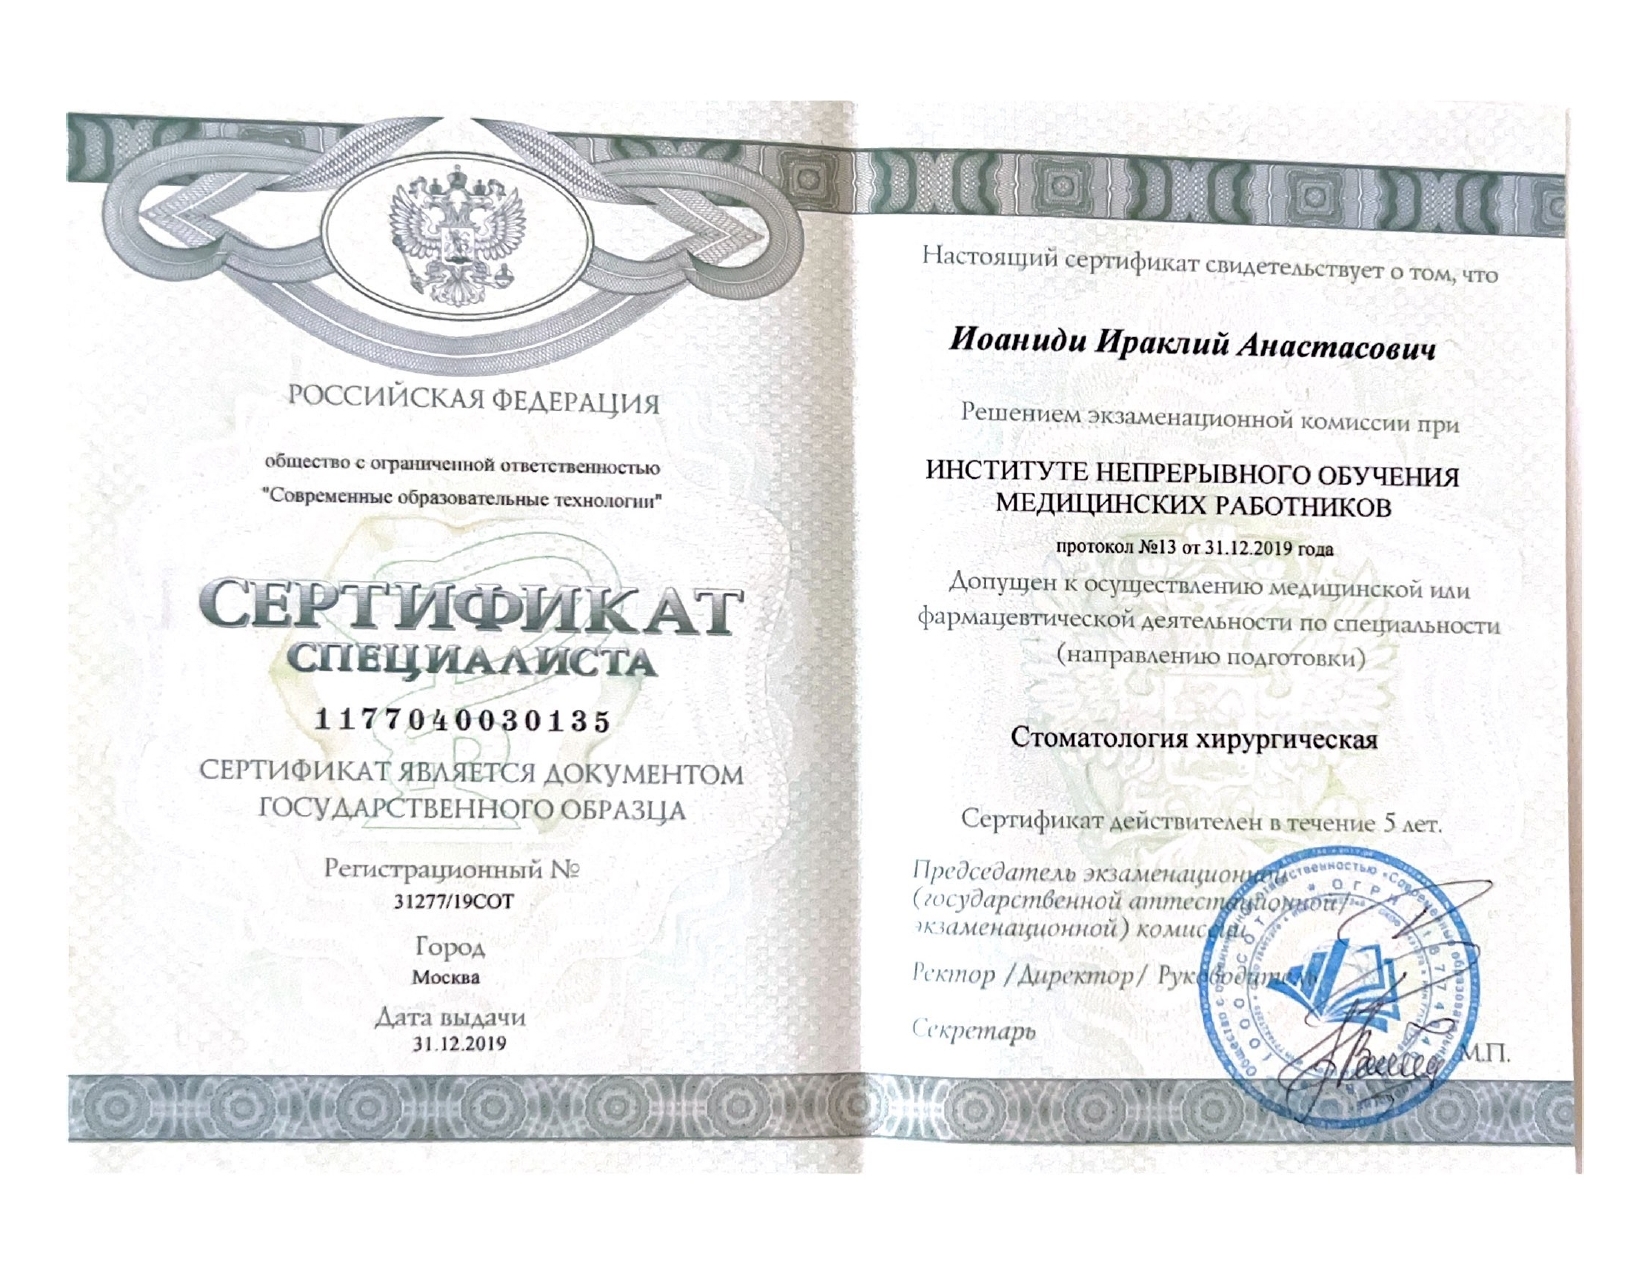 Иоаниди Ираклий Анастасович - сертификаты